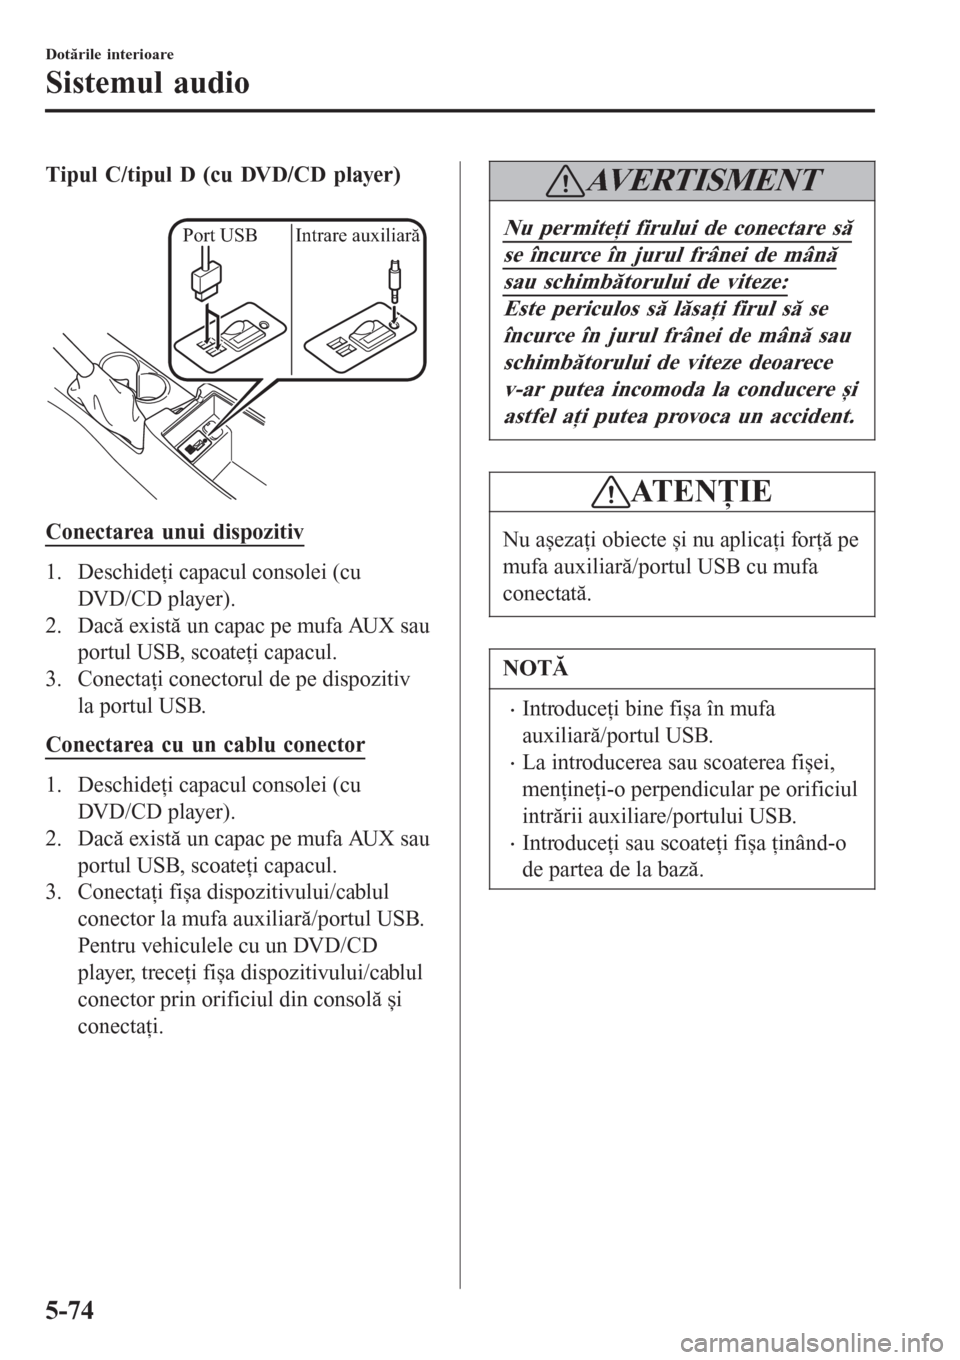 MAZDA MODEL 3 HATCHBACK 2015  Manualul de utilizare (in Romanian) Tipul C/tipul D (cu DVD/CD player)
 
Port USB Intrare auxiliară
Conectarea unui dispozitiv
1. Deschideţi capacul consolei (cu
DVD/CD player).
2. Dacă există un capac pe mufa AUX sau
portul USB, sc